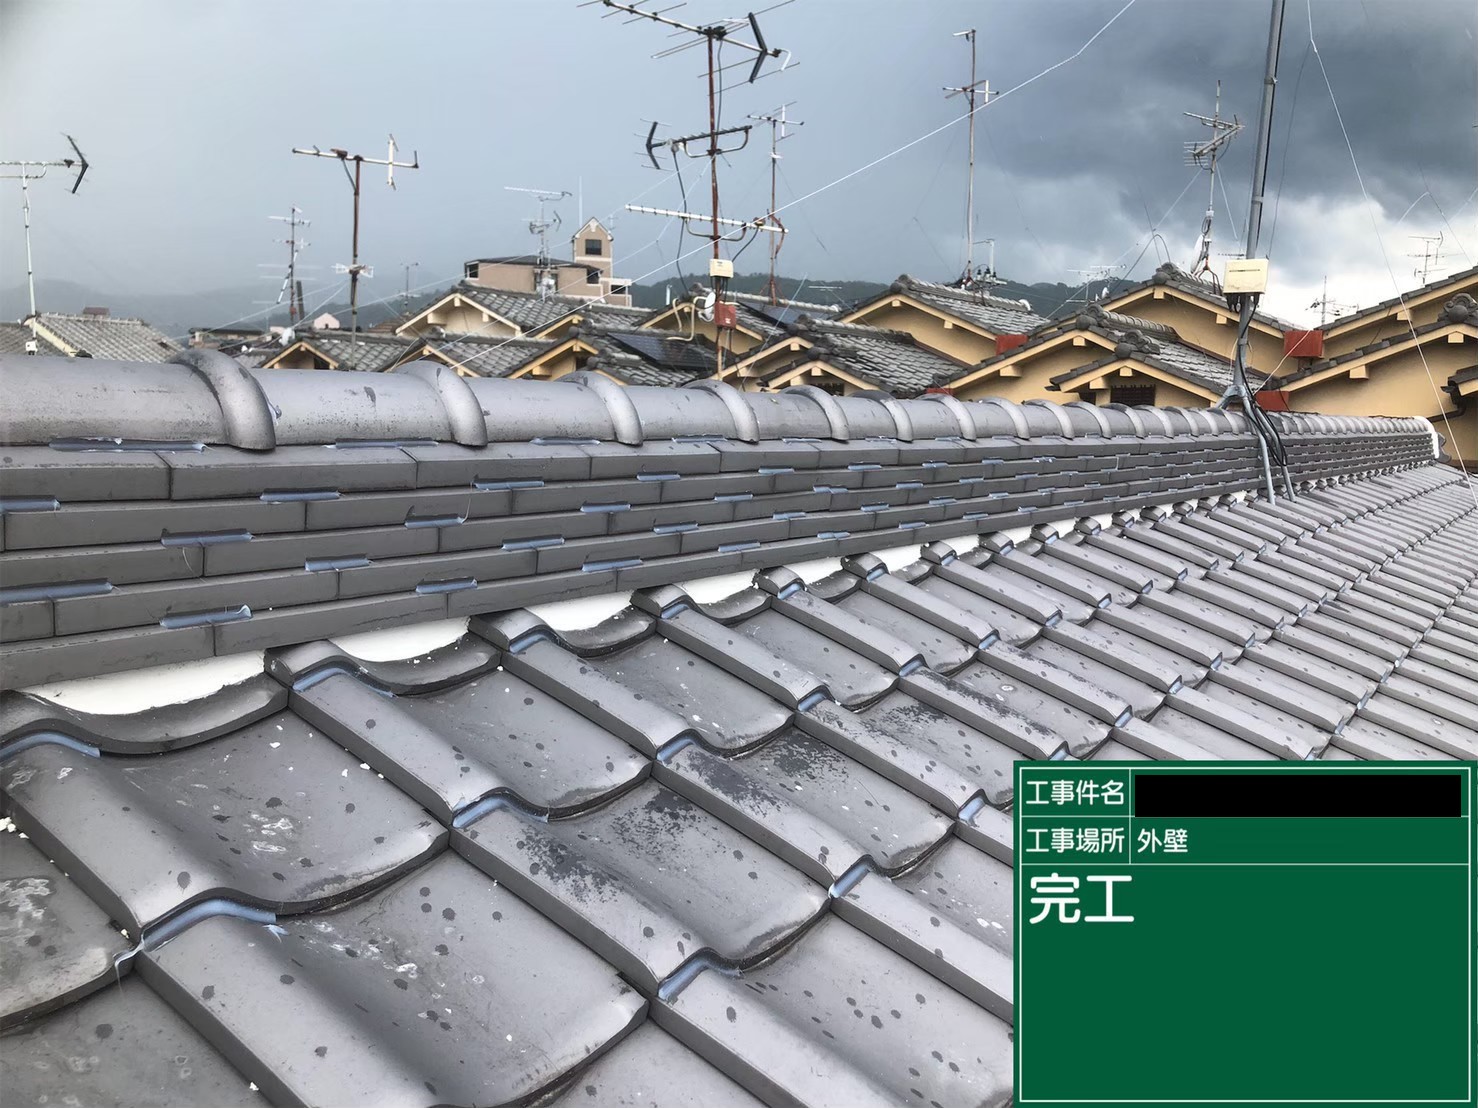 大阪市生野区で瓦屋根の漆喰詰め直し工事を行いました